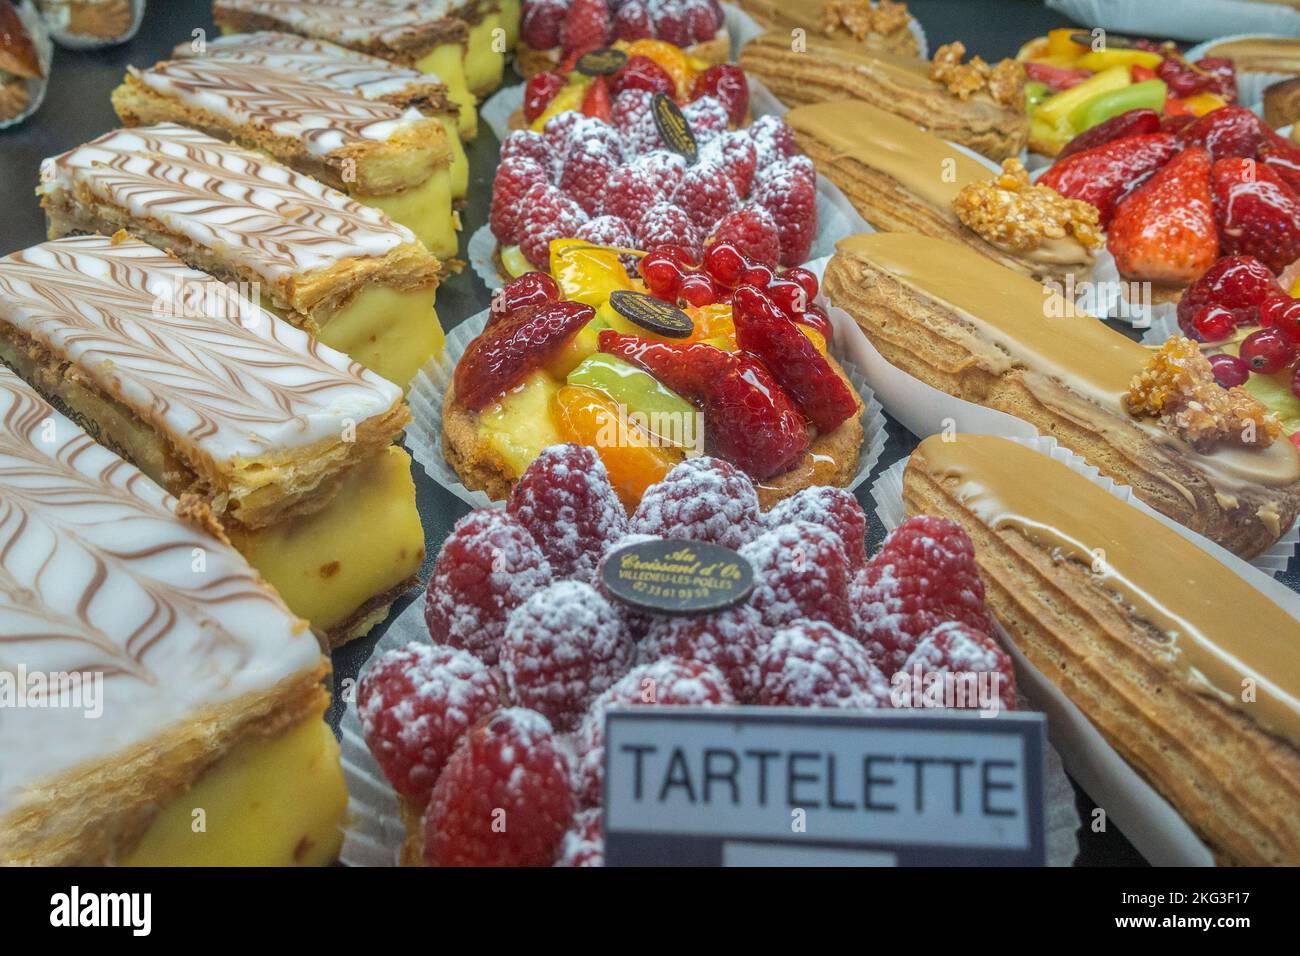 Des pâtisseries françaises extrêmement délicieuses dans une vitrine en France, y compris des eclars, des tartelettes aux fruits et des crème patissière garnies de mille feuilles Banque D'Images